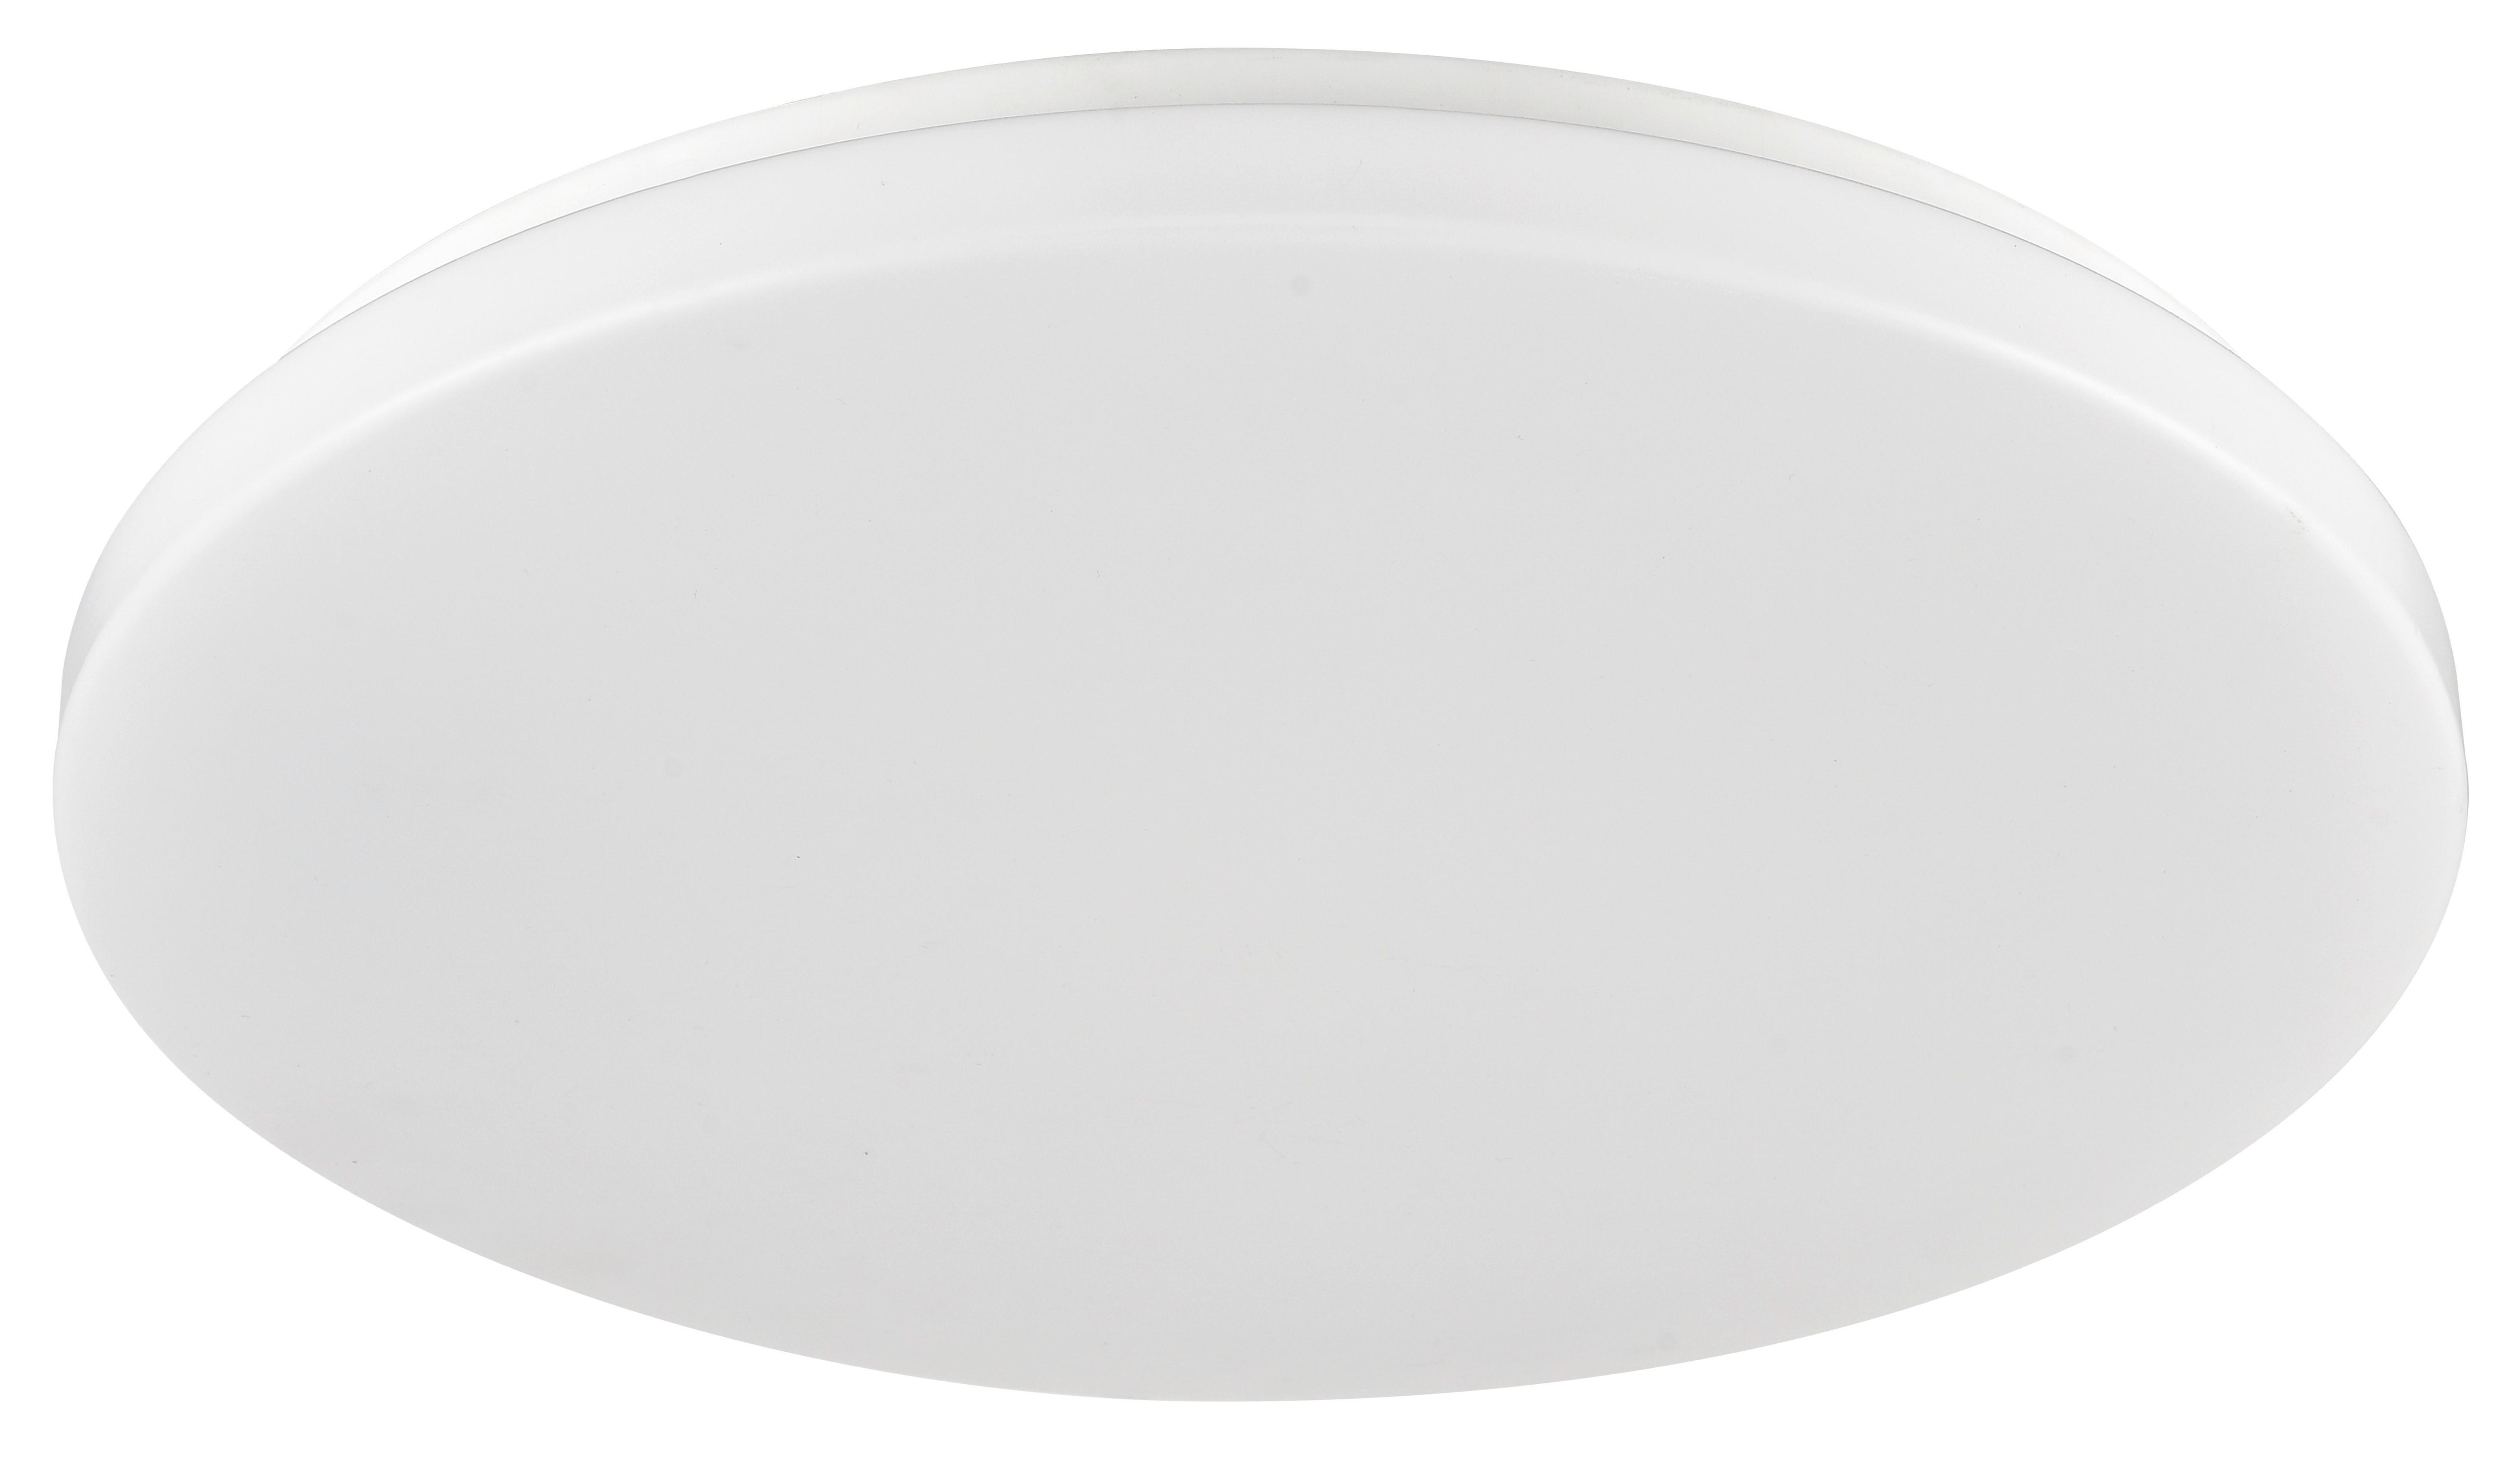 LED-DECKENLEUCHTE 12 W   28 cm   - Weiß, Basics, Kunststoff/Metall (28cm) - Boxxx